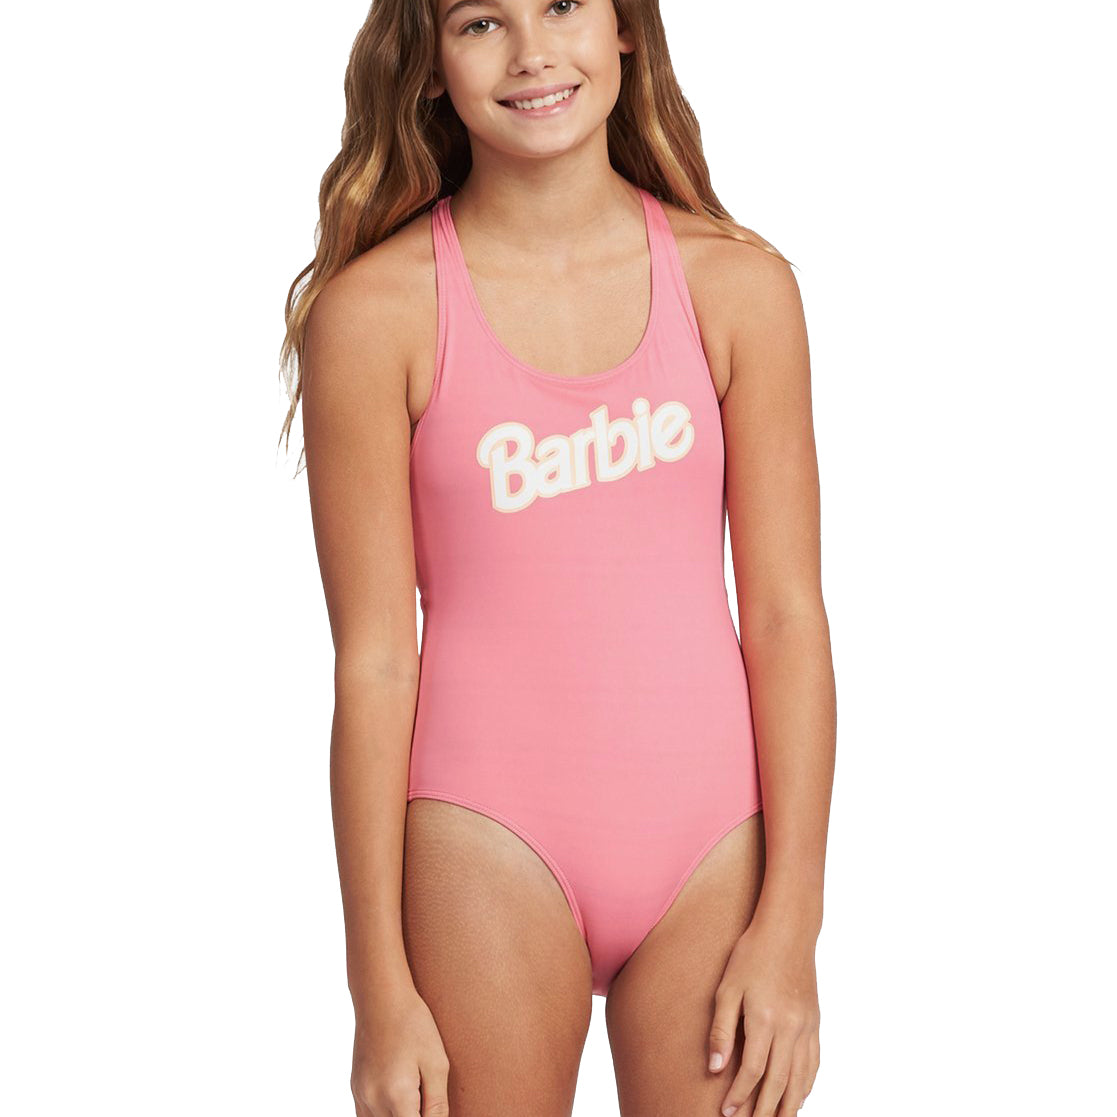 Roxy Girl Barbie One Piece Swimsuit MJB0 8